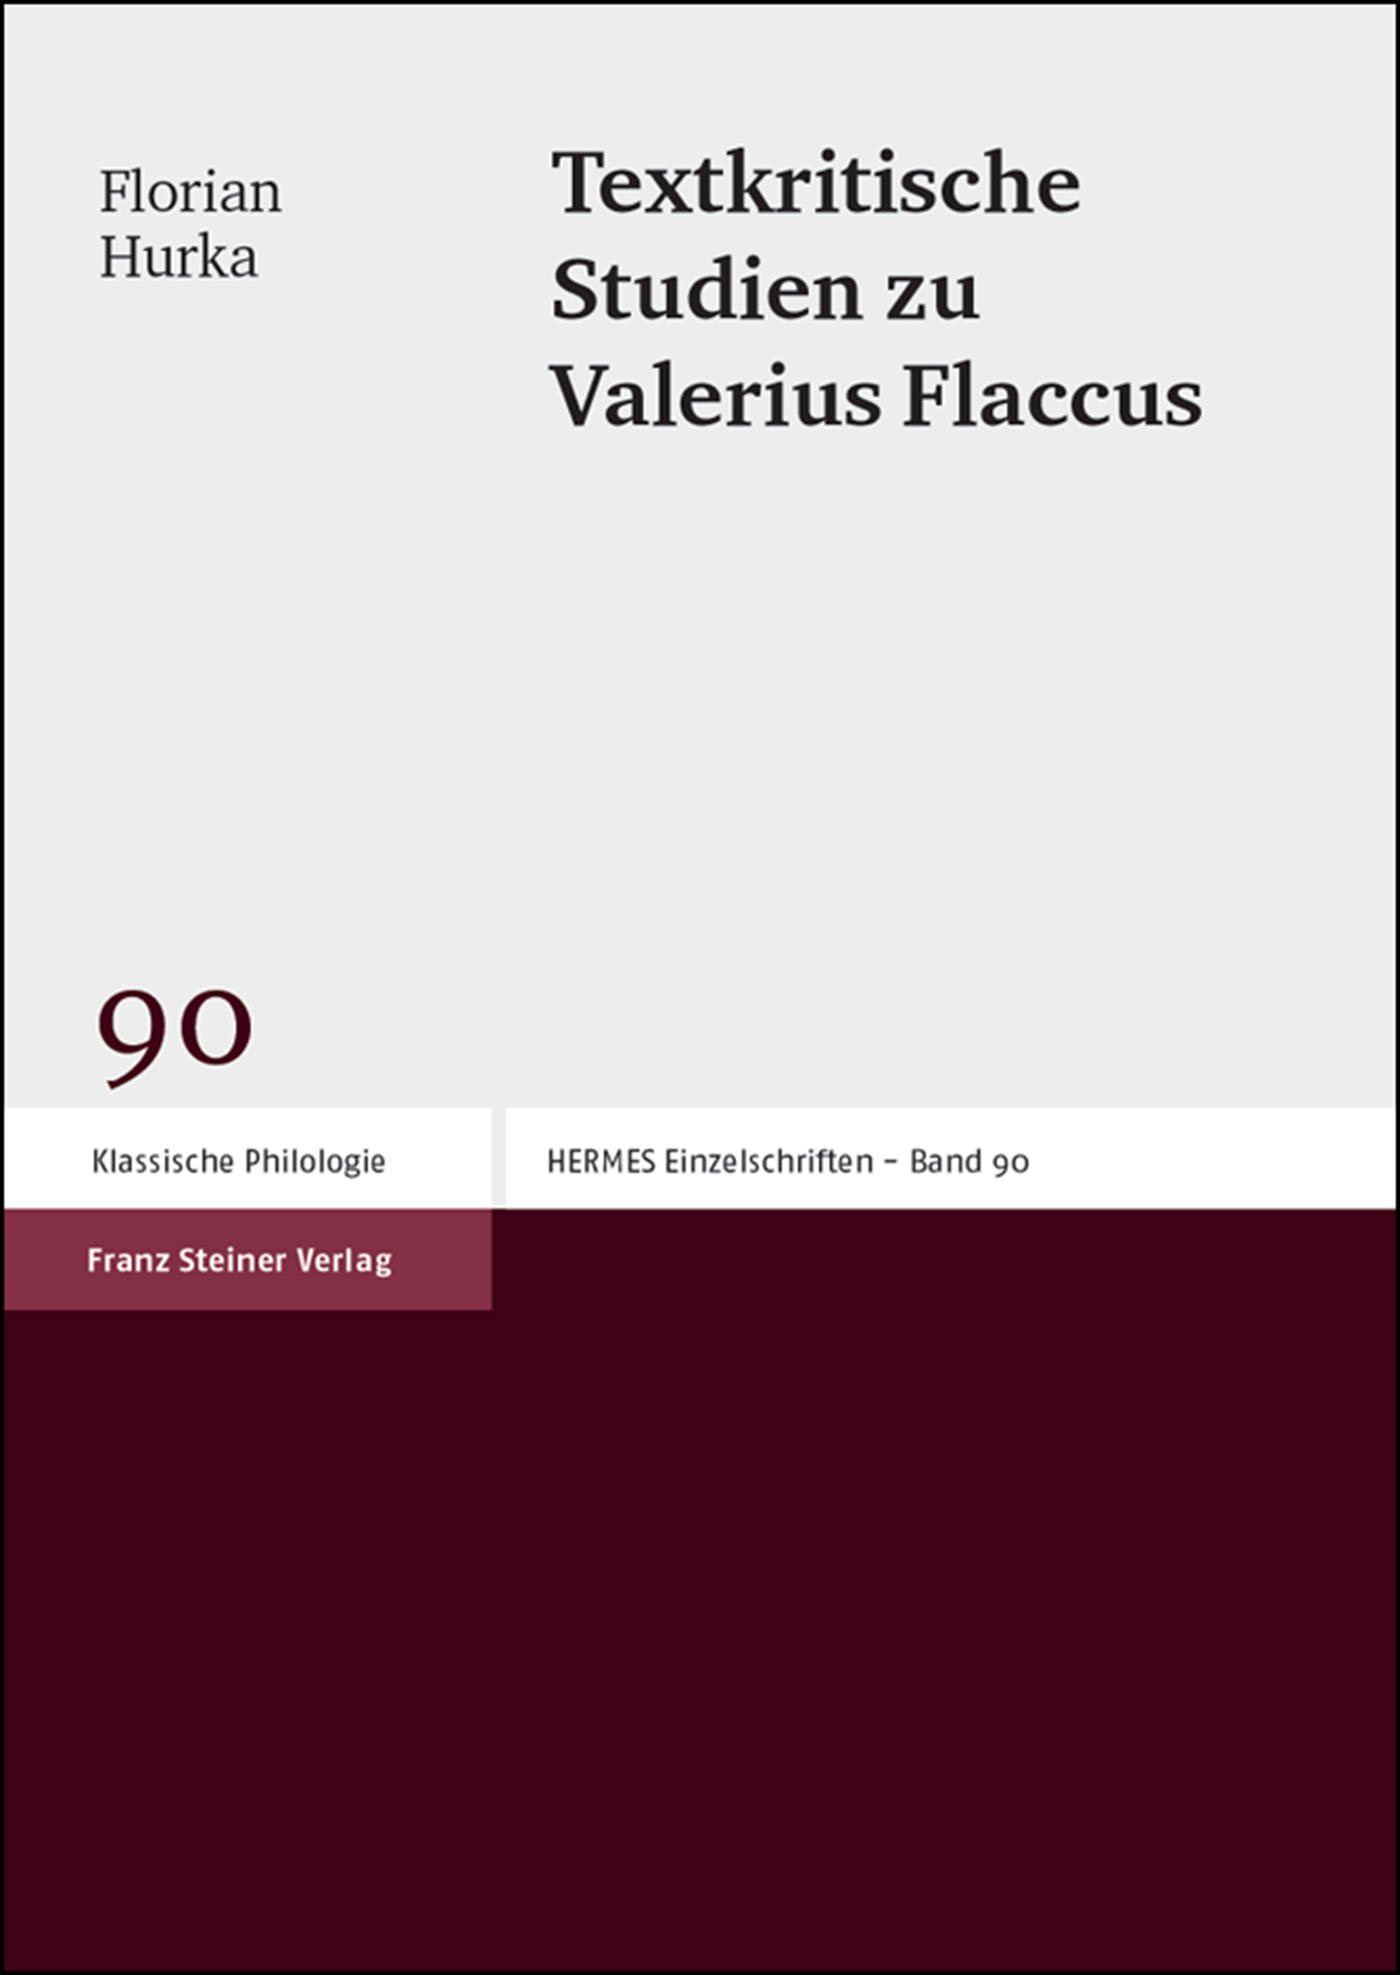 Textkritische Studien zu Valerius Flaccus